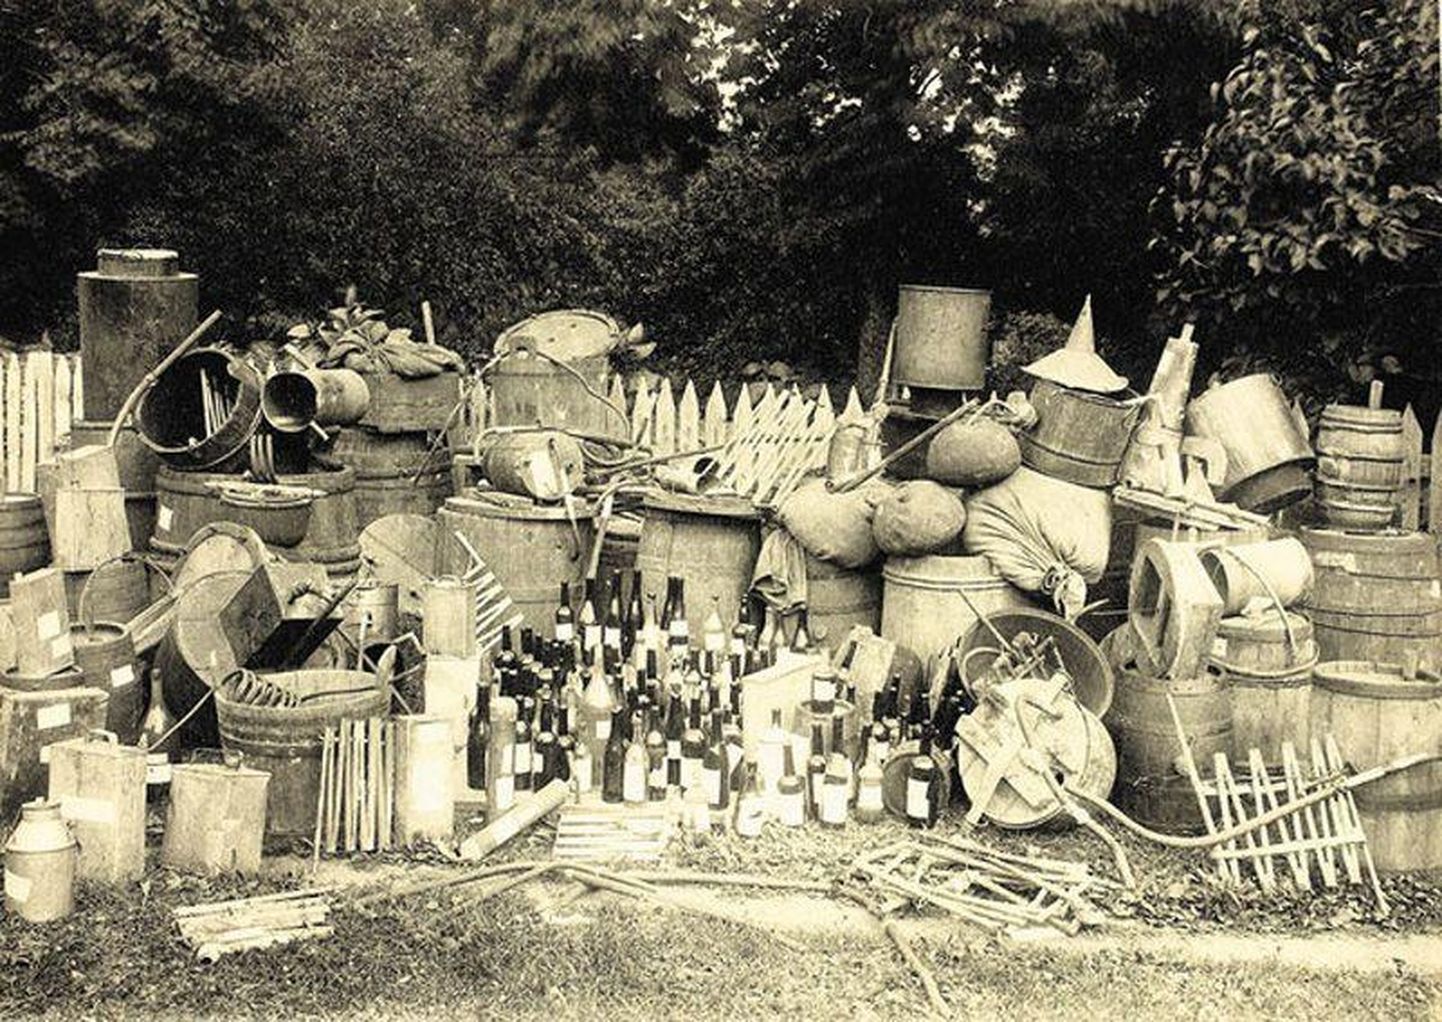 Pildile on jäänud vaid väike osa puskariajamisega seotud kraamist ja alkoholist, mis konfiskeeriti 1919. aastal ja läks hävitamisele.